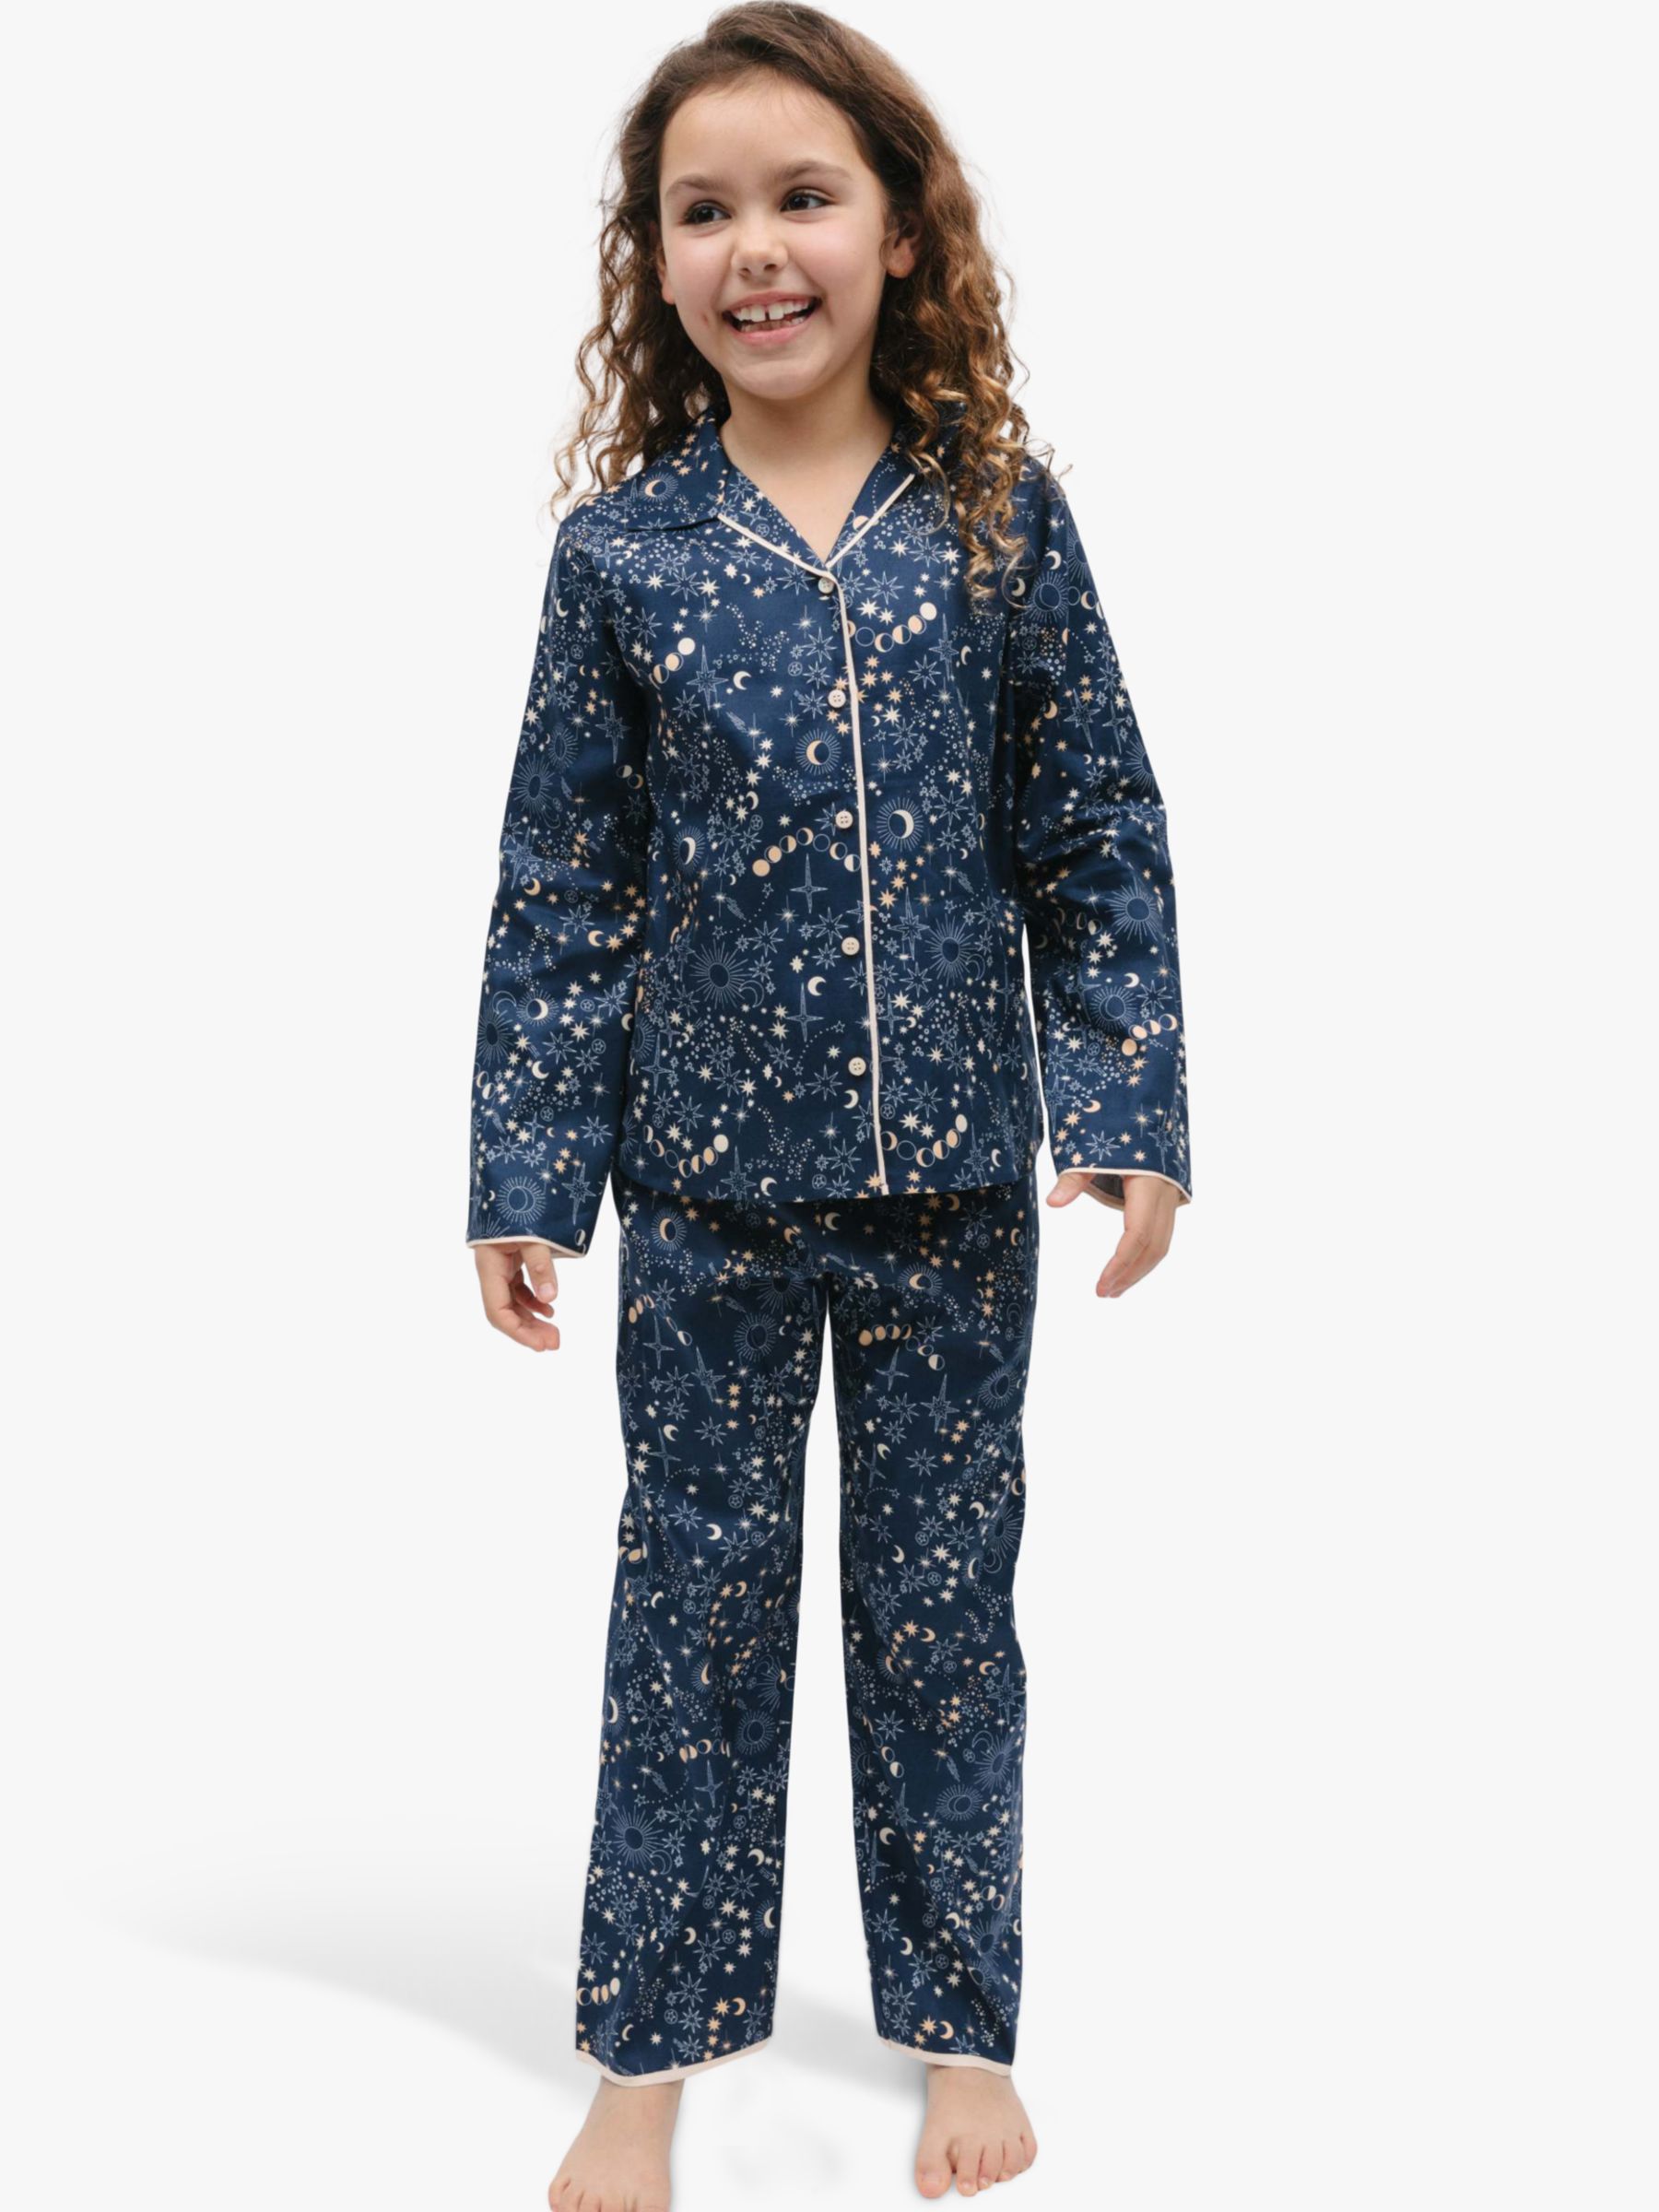 Minijammies Kids' Cosmo Celestial Print Pyjamas, Navy, 10-11 years